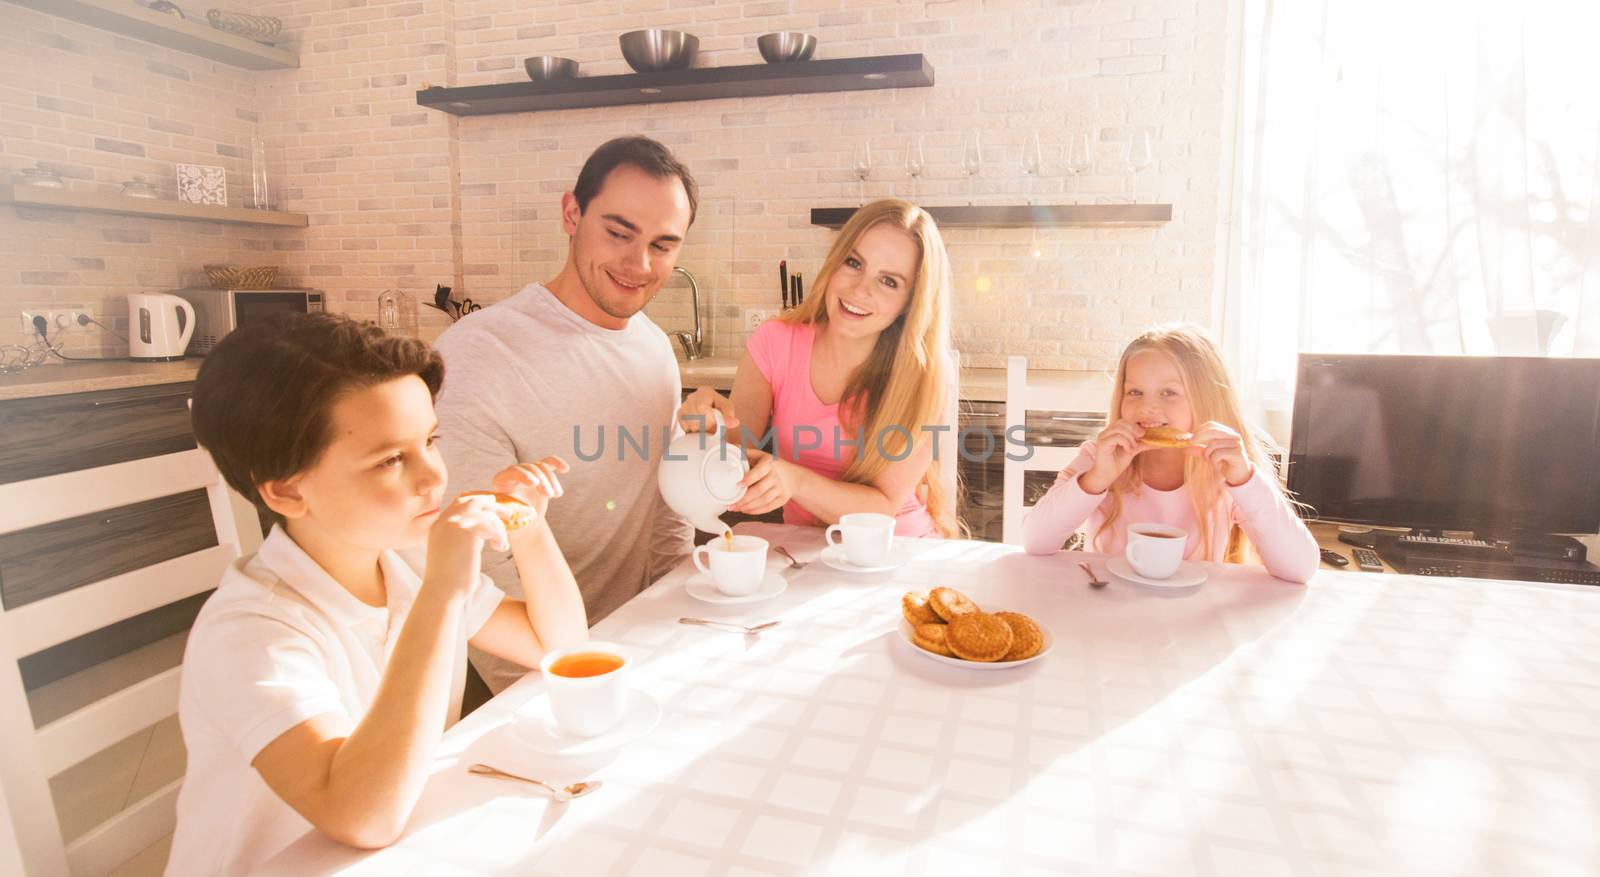 Family having breakfast in kitchen by Yellowj